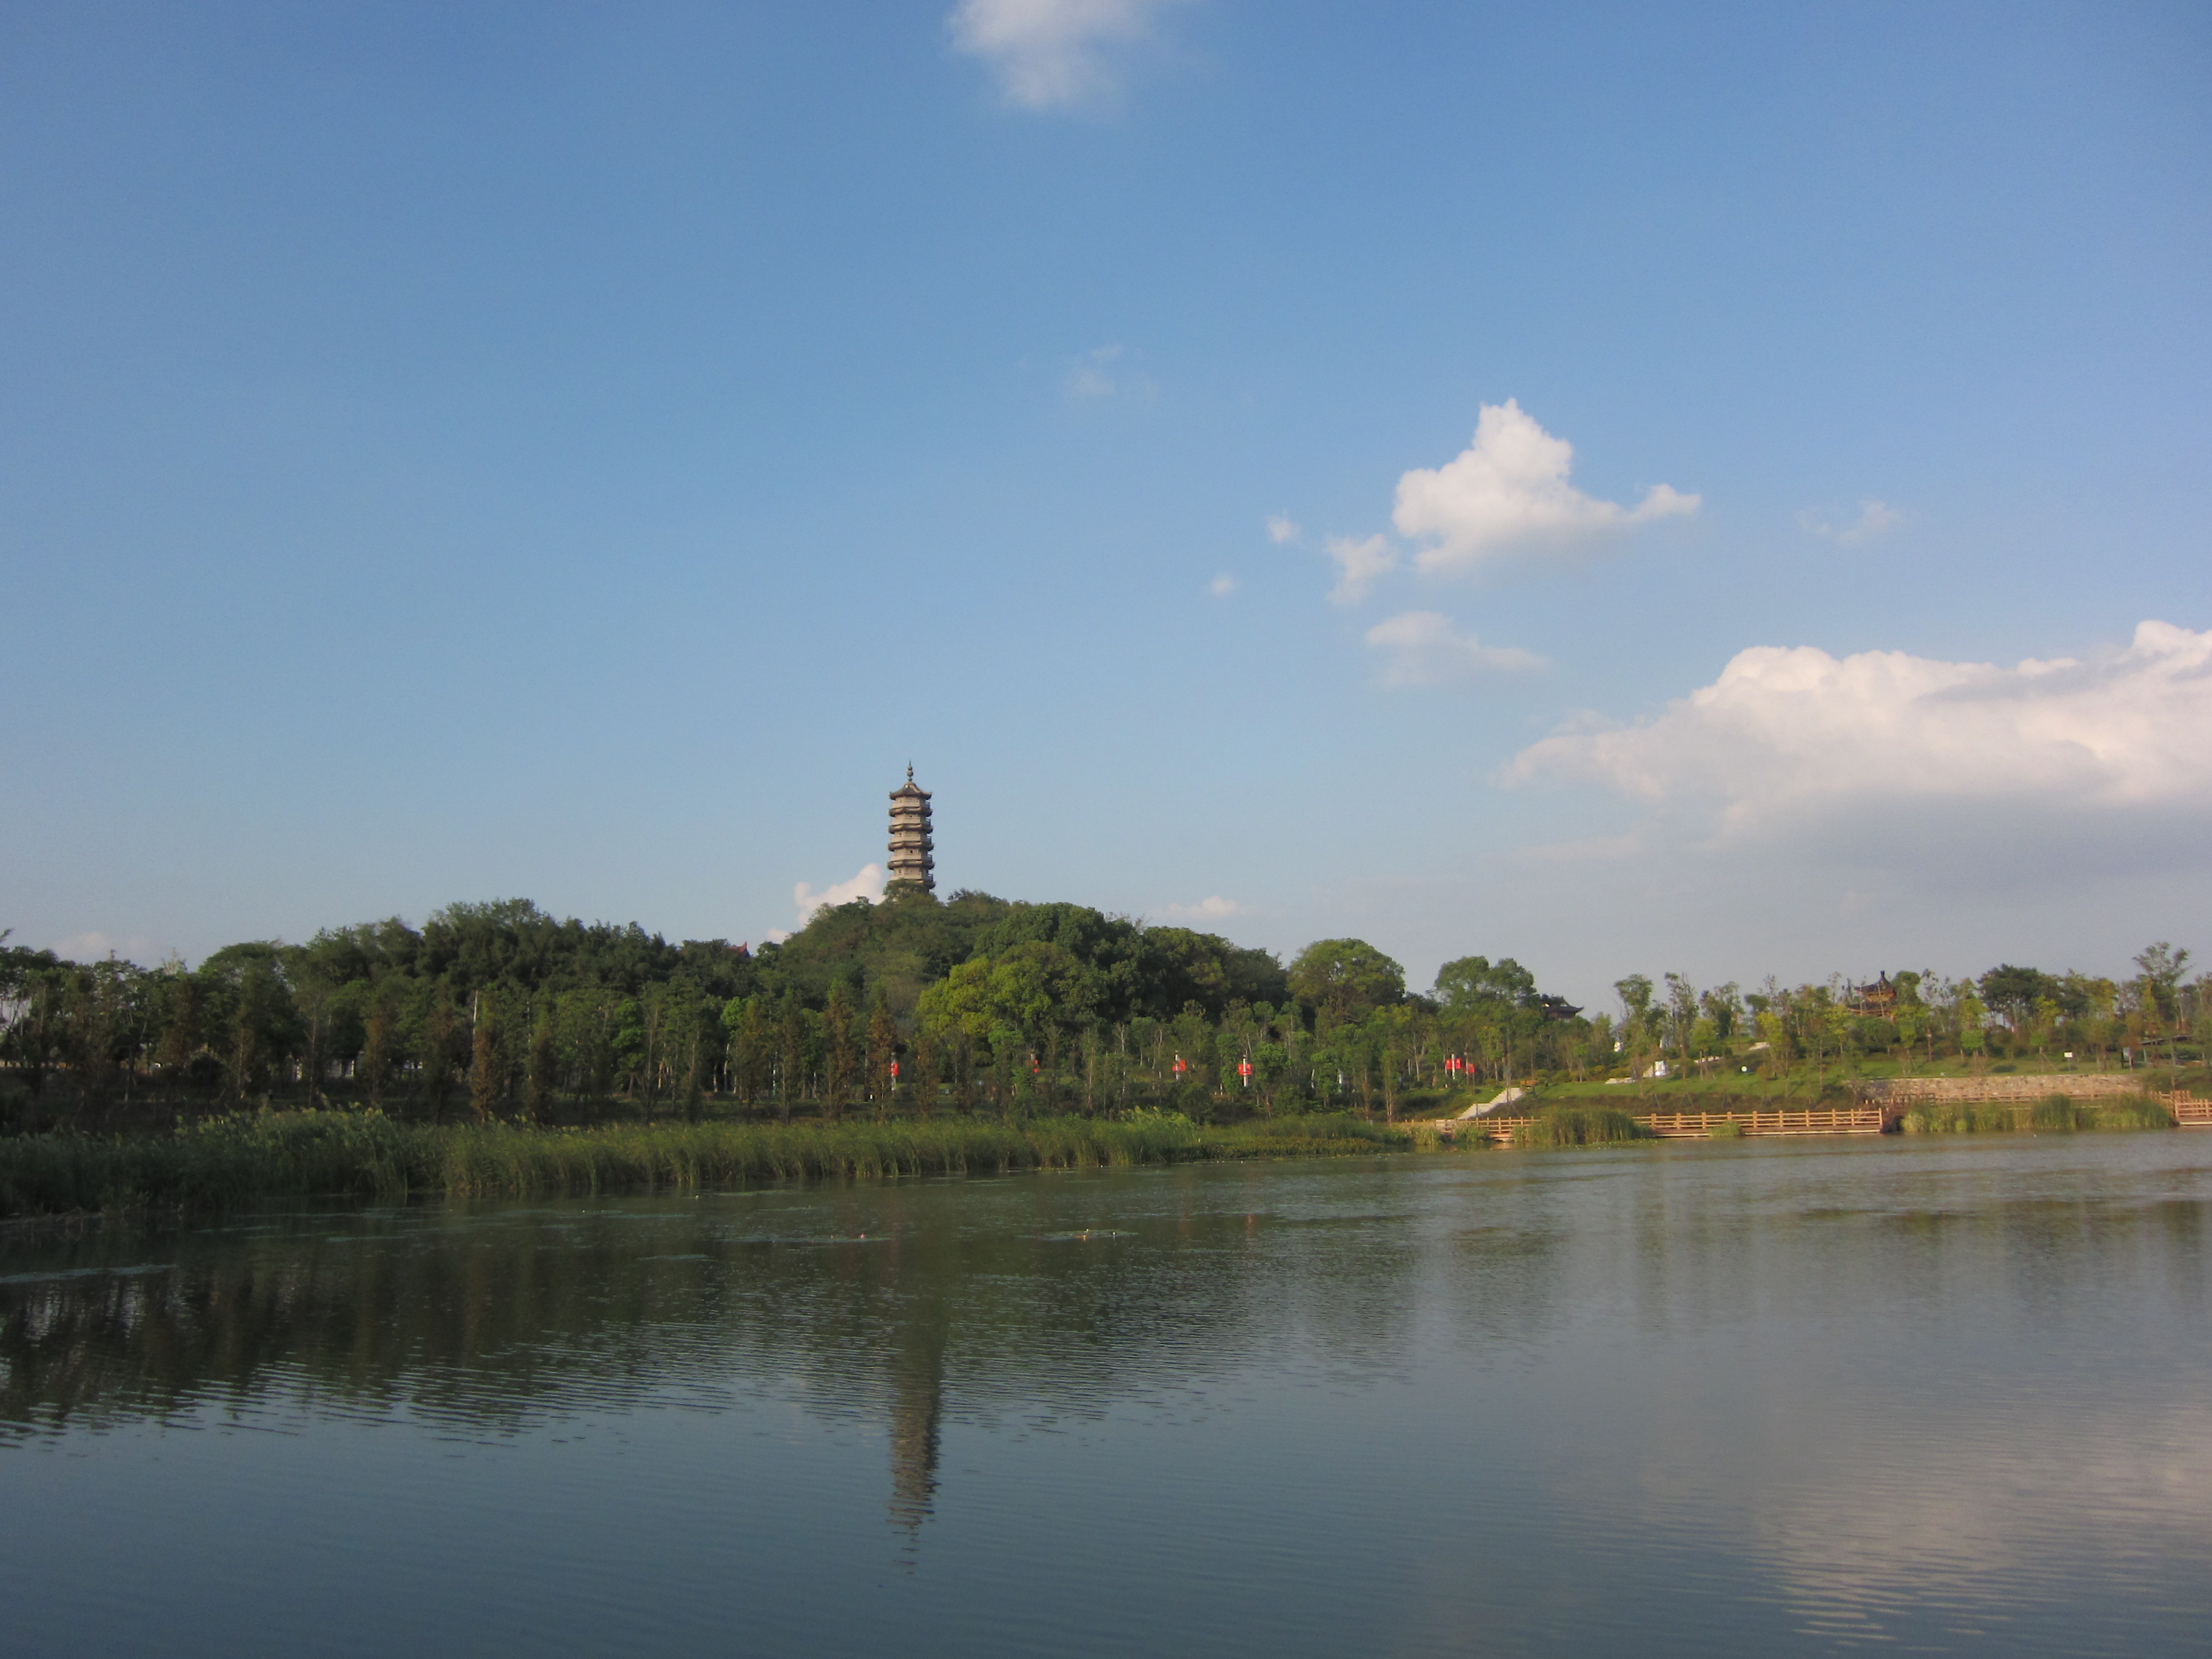 当涂县凌云山公园的景色真美,大词人李之仪曾在姑溪河畔钓鱼